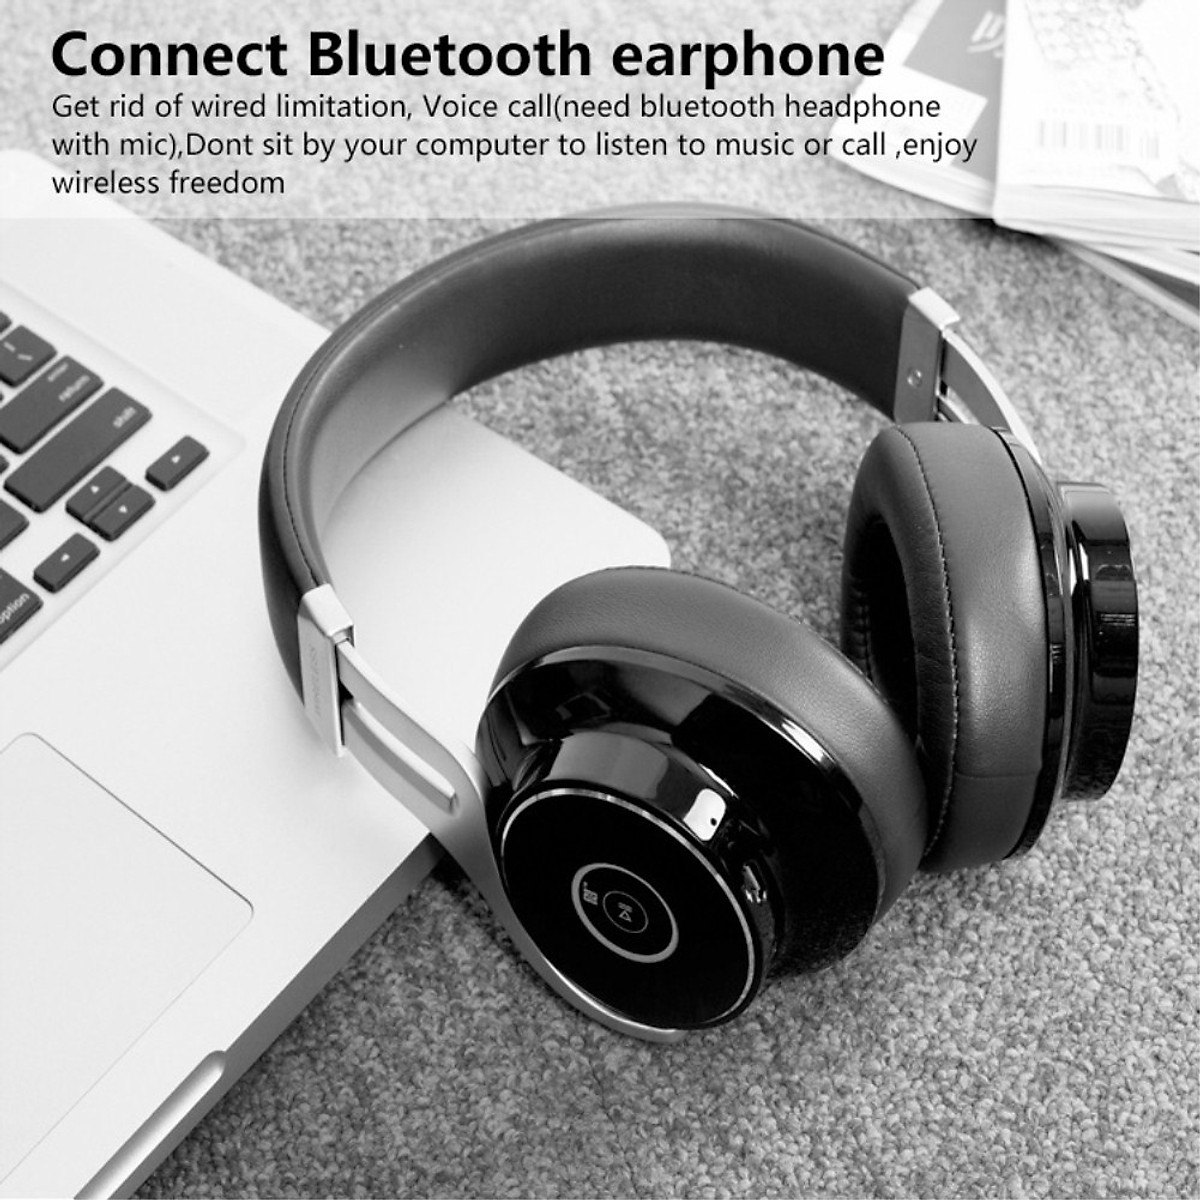 Bộ thu phát không dây Usb bluetooth 5.0 dùng cho máy tính laptop pc - hàng chính hãng